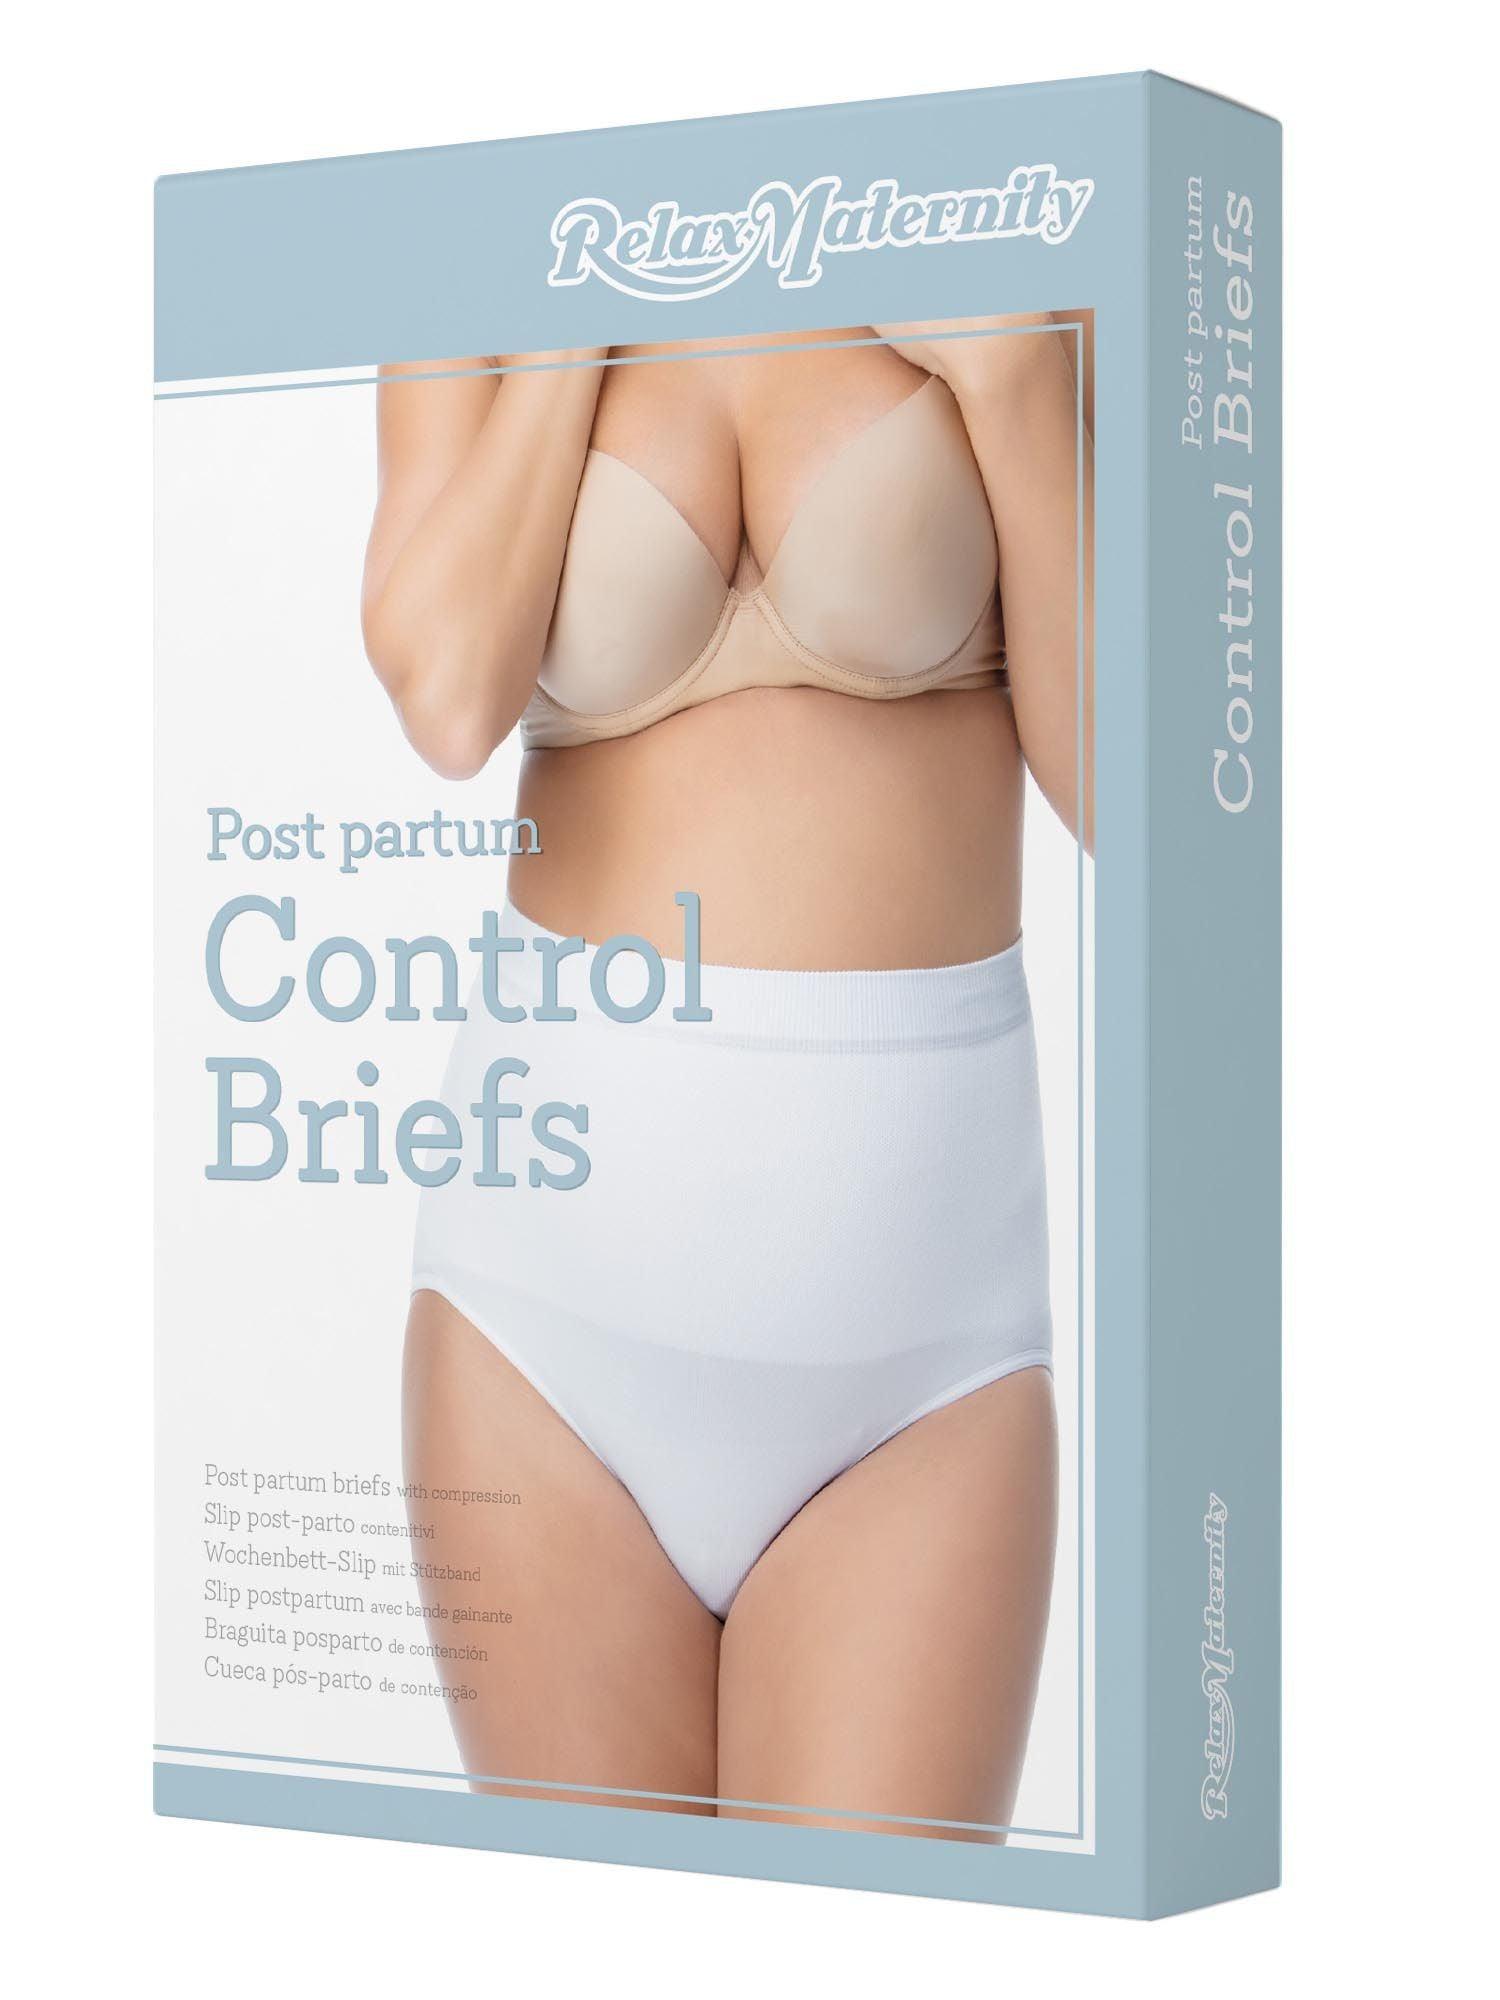 Cotton high-waist postpartum control knickers - Wellness Shoppee